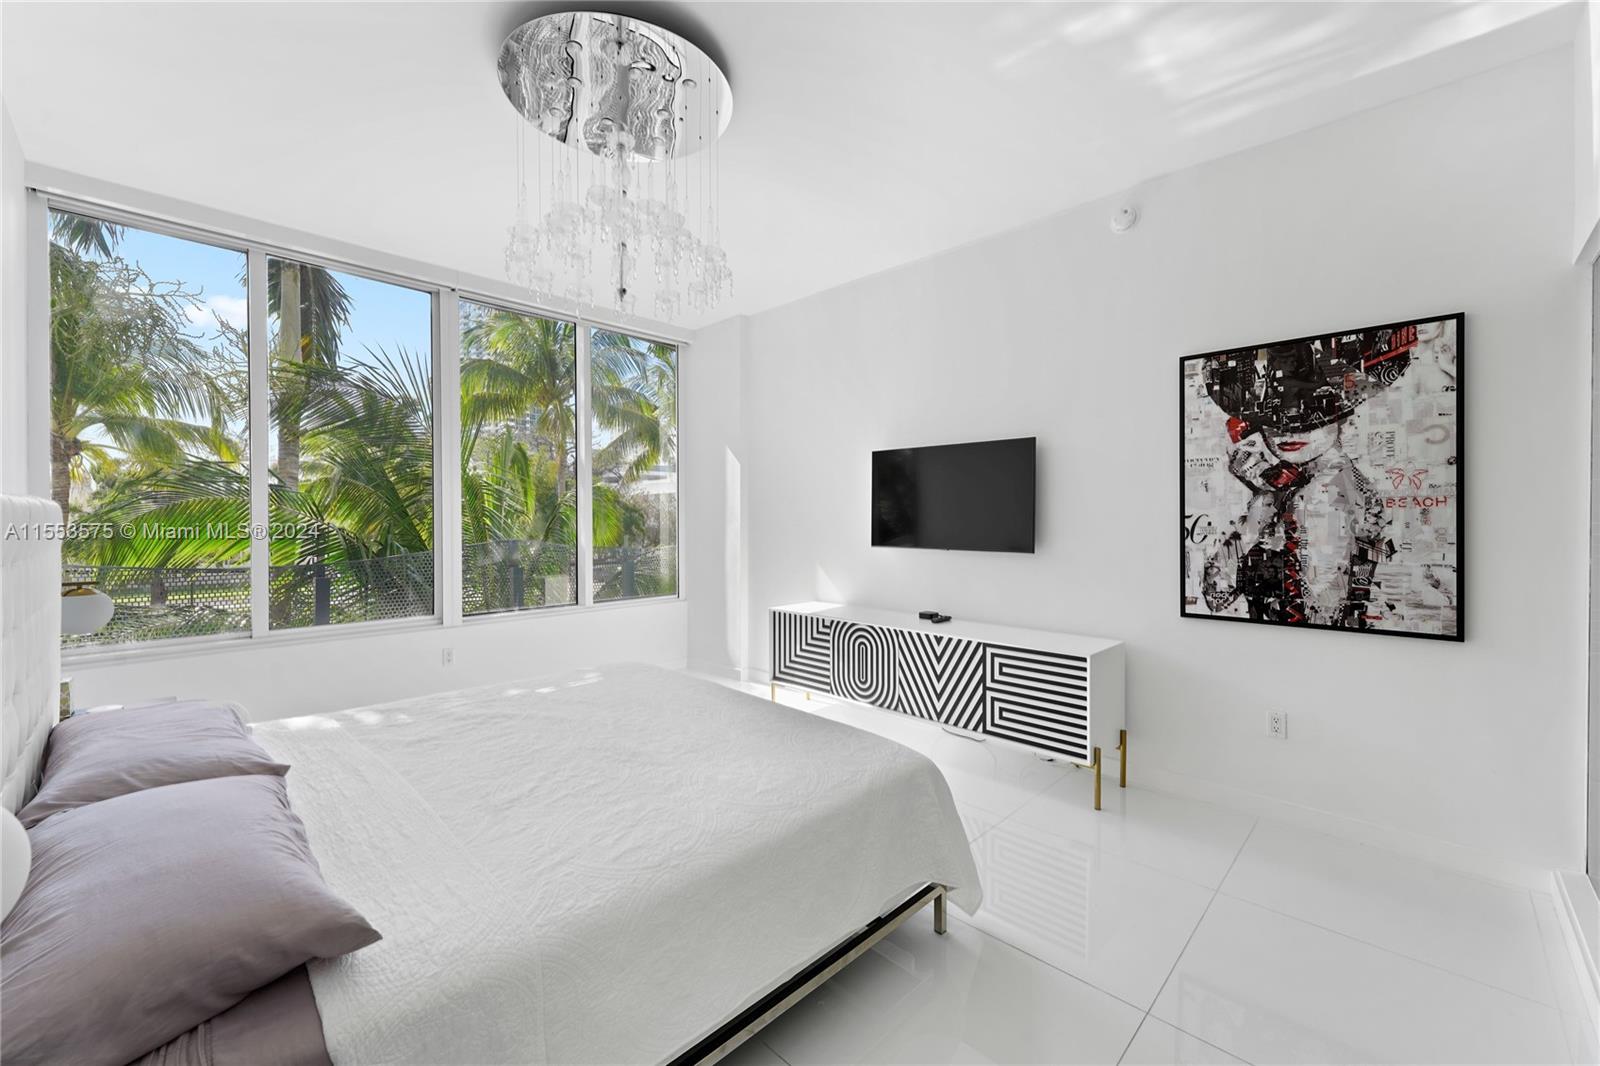 Rental Property at 2100 Park Ave 201, Miami Beach, Miami-Dade County, Florida - Bedrooms: 3 
Bathrooms: 2  - $6,500 MO.